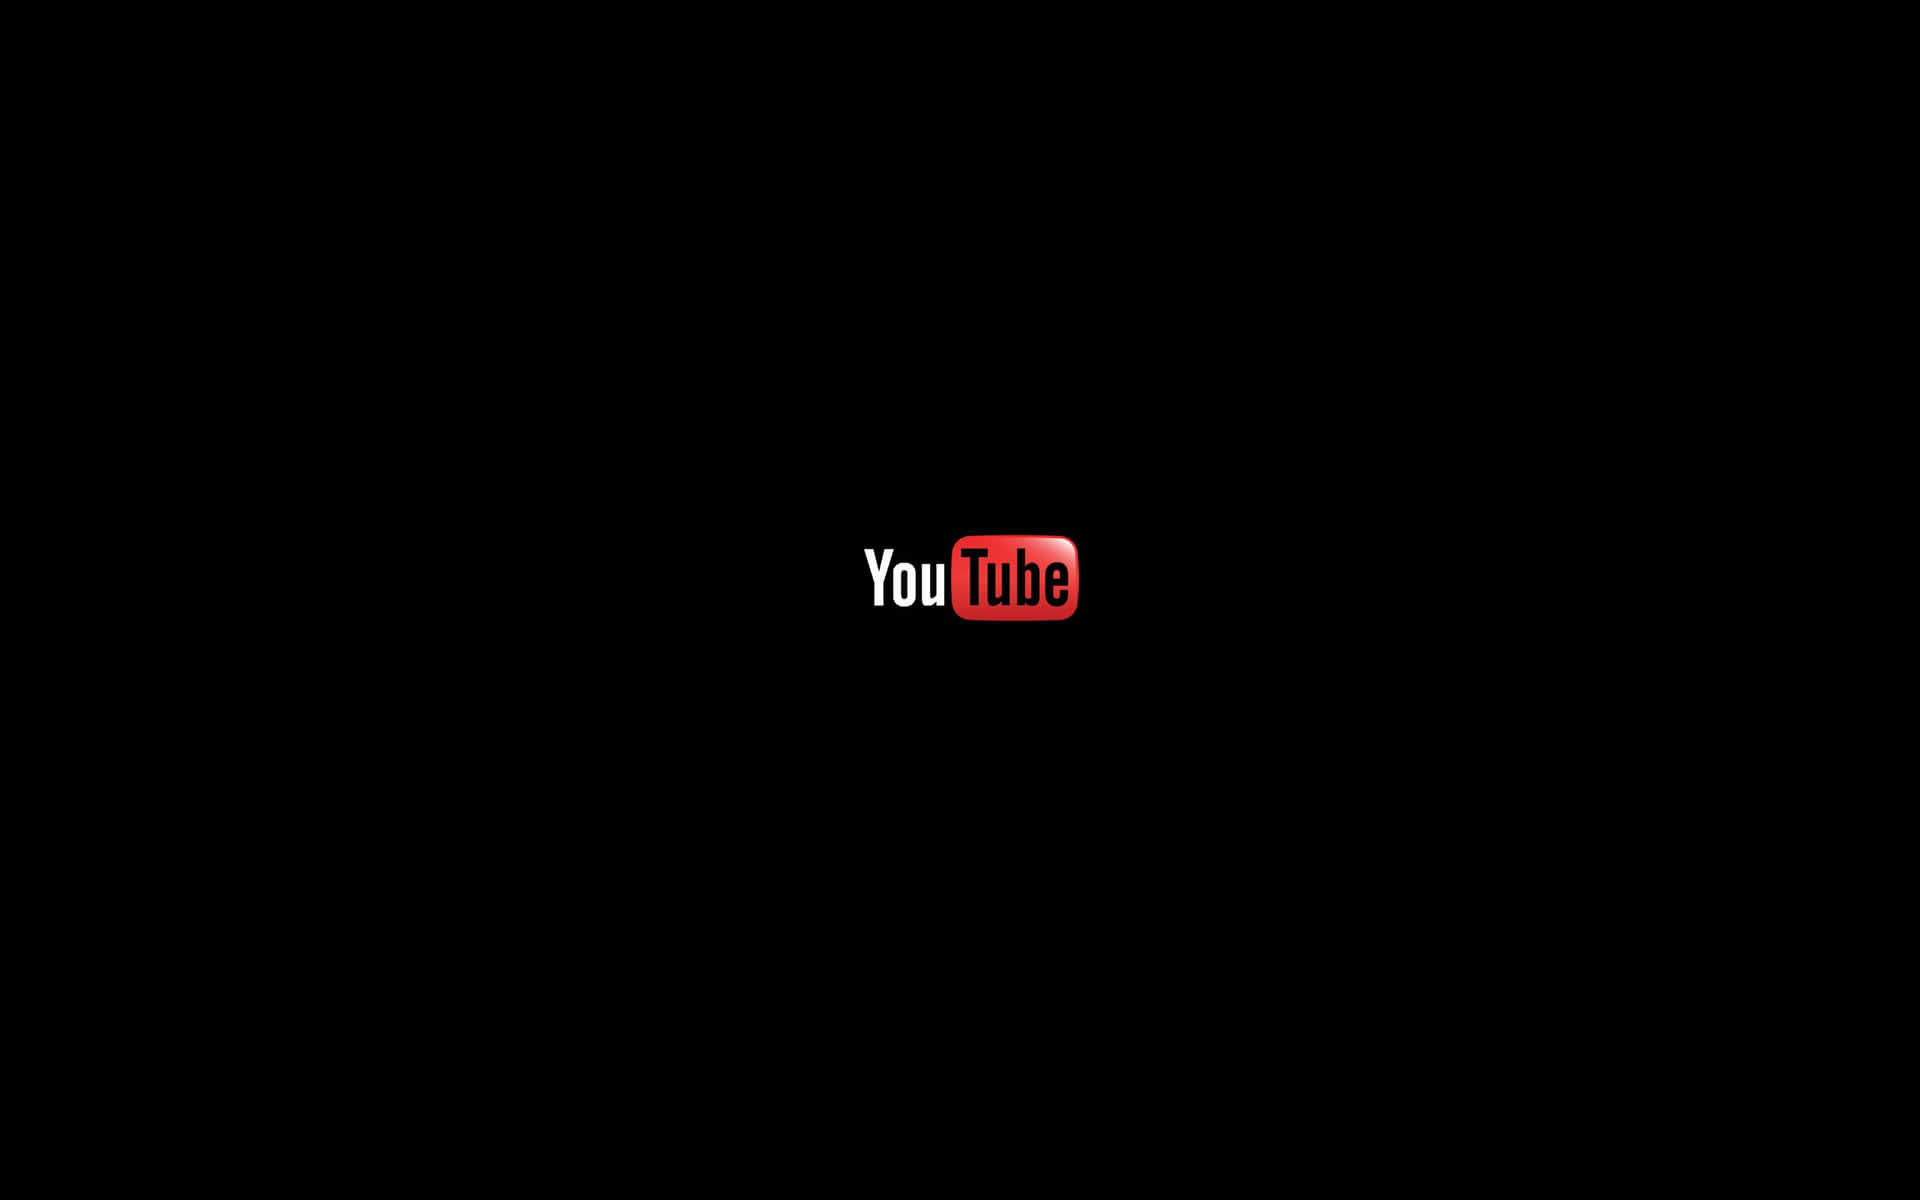 The Youtube Logo in Black